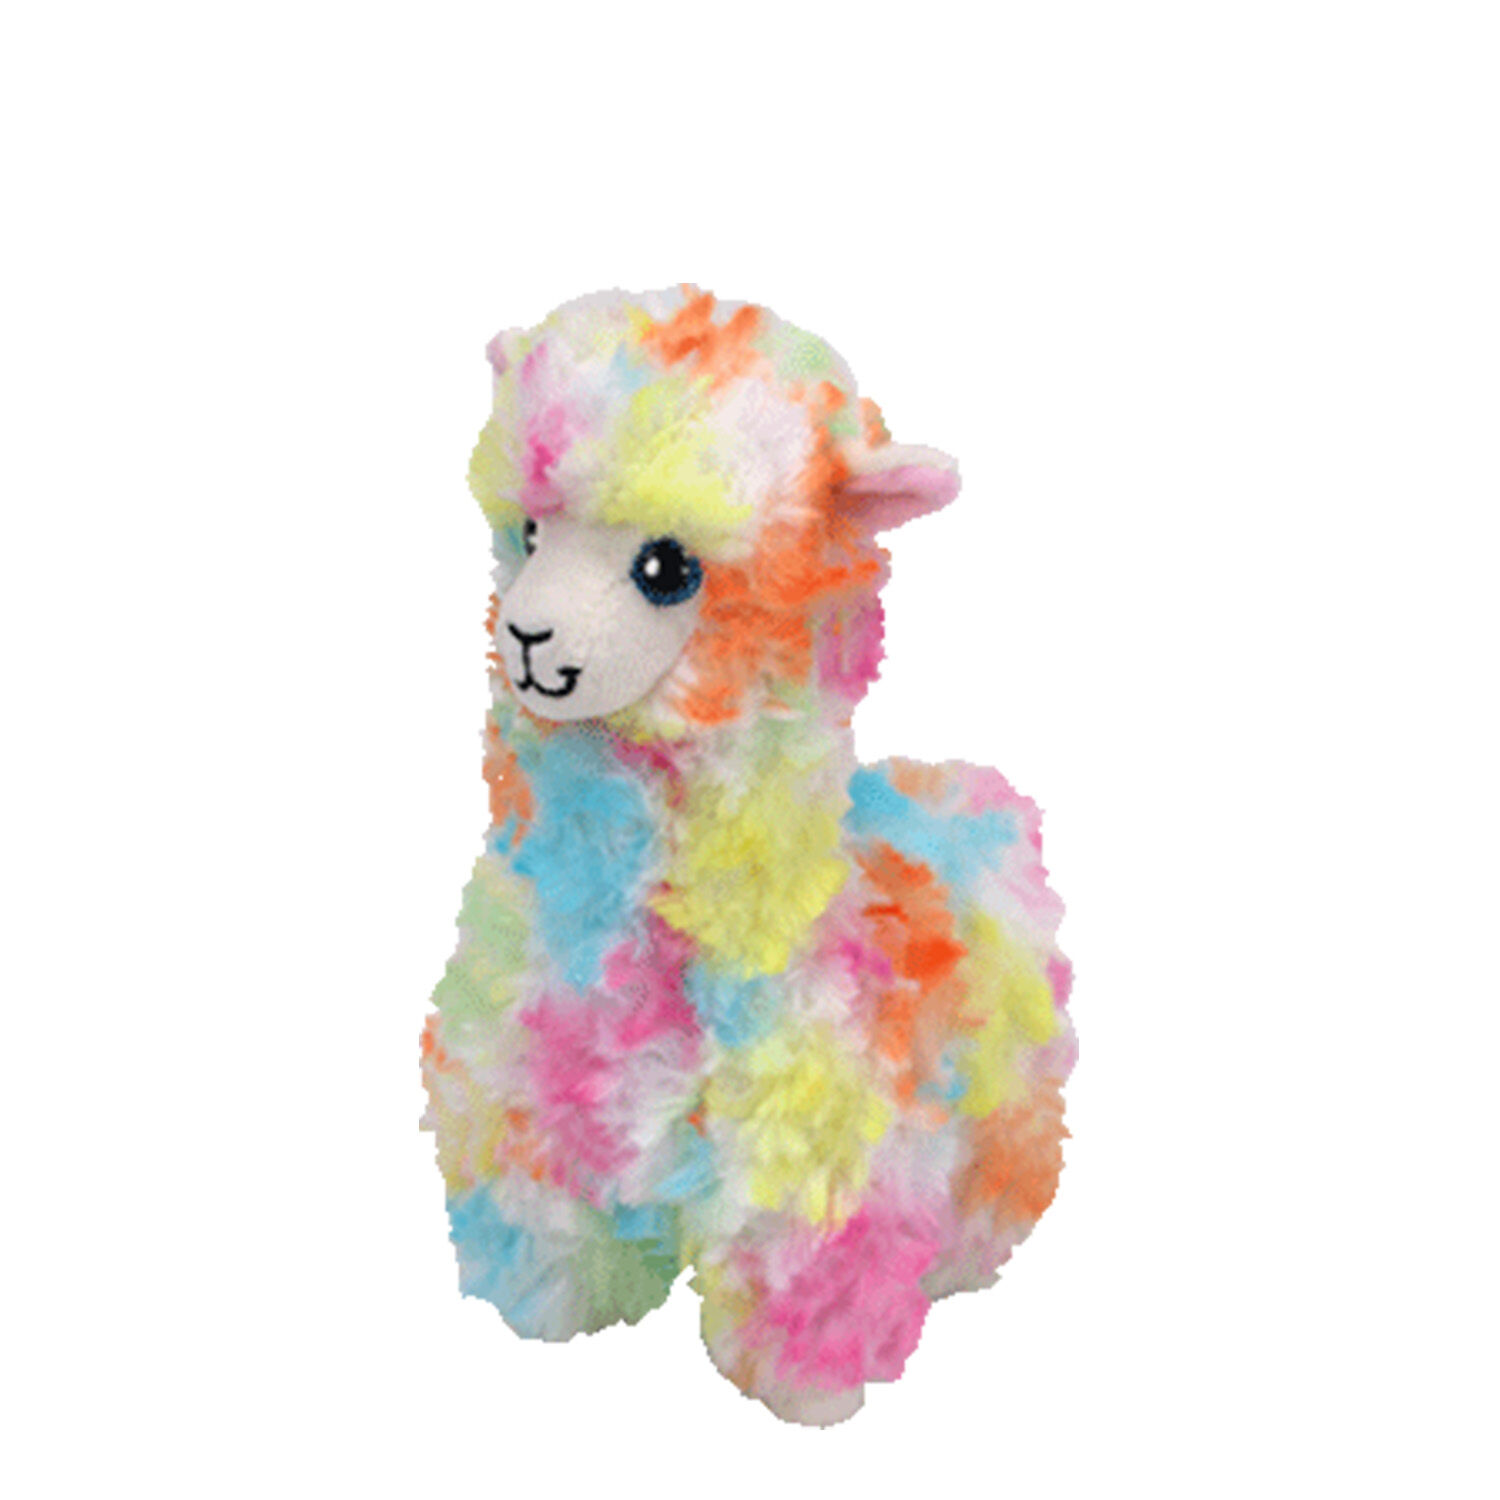 small llama toy